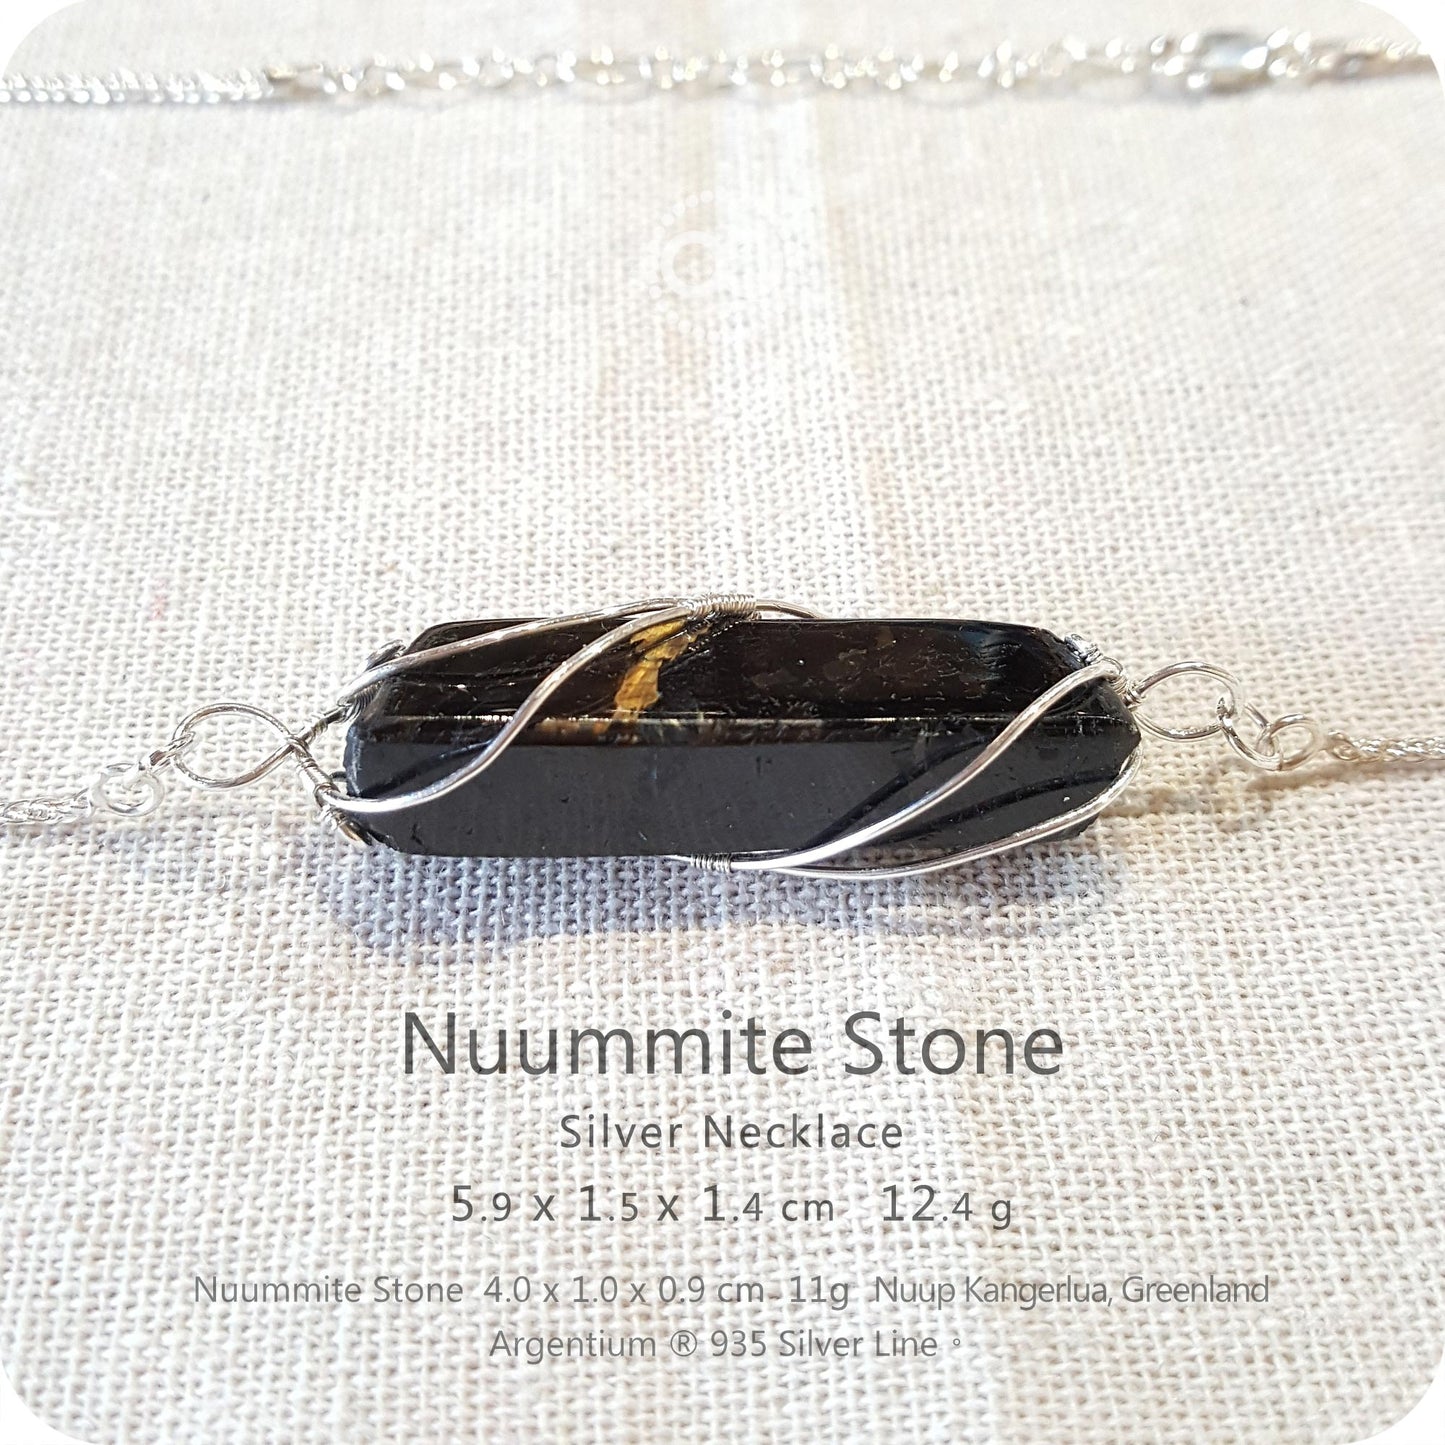 NUUMMITE Silver Necklace - H206